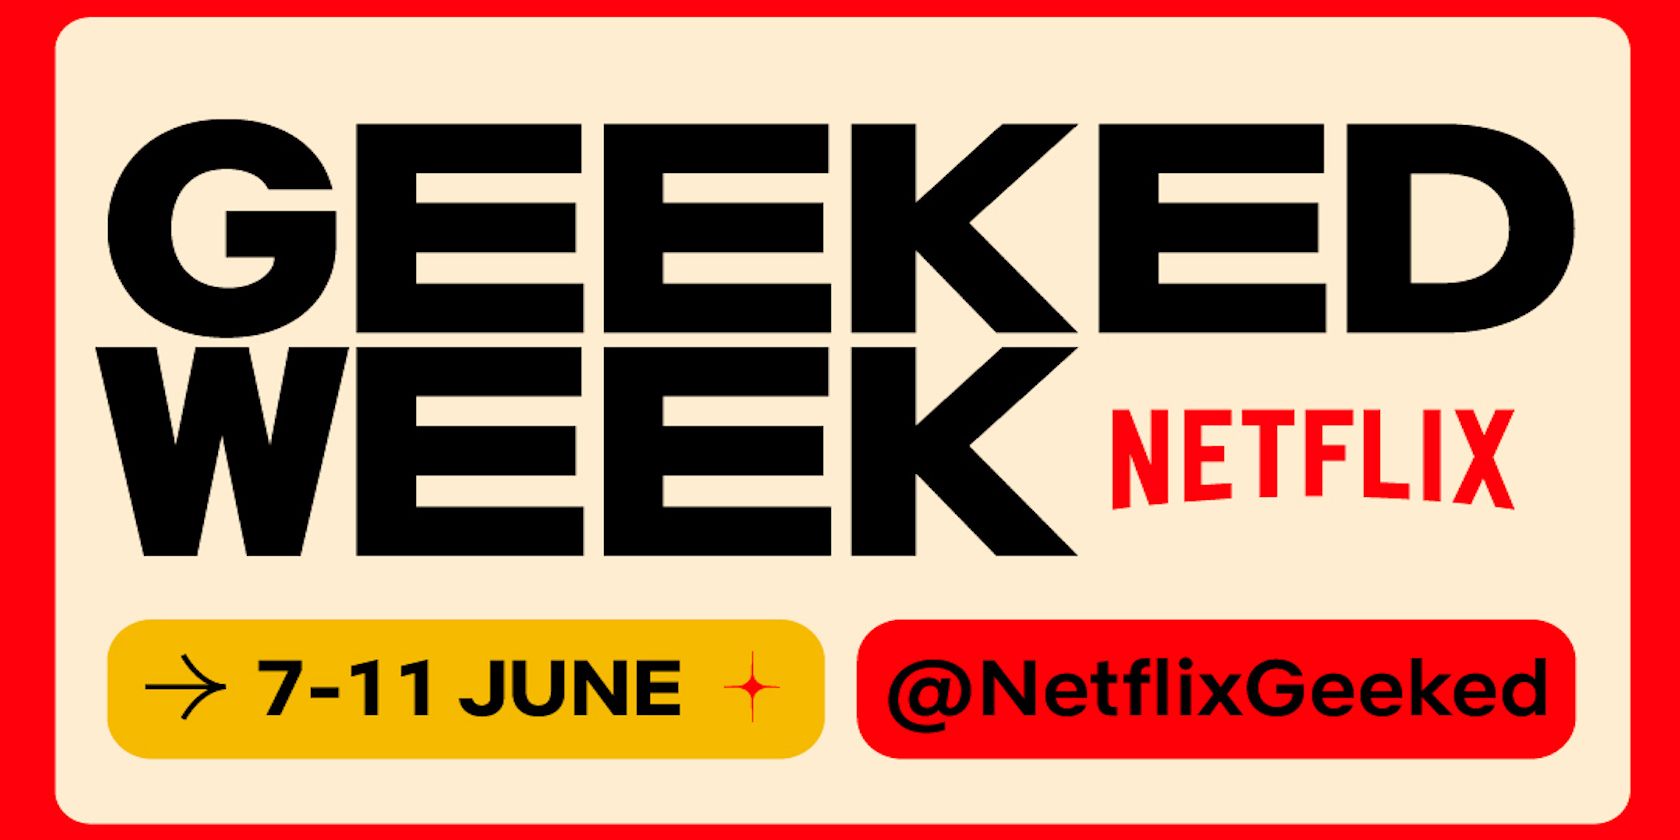 Netlfix Geeked Week